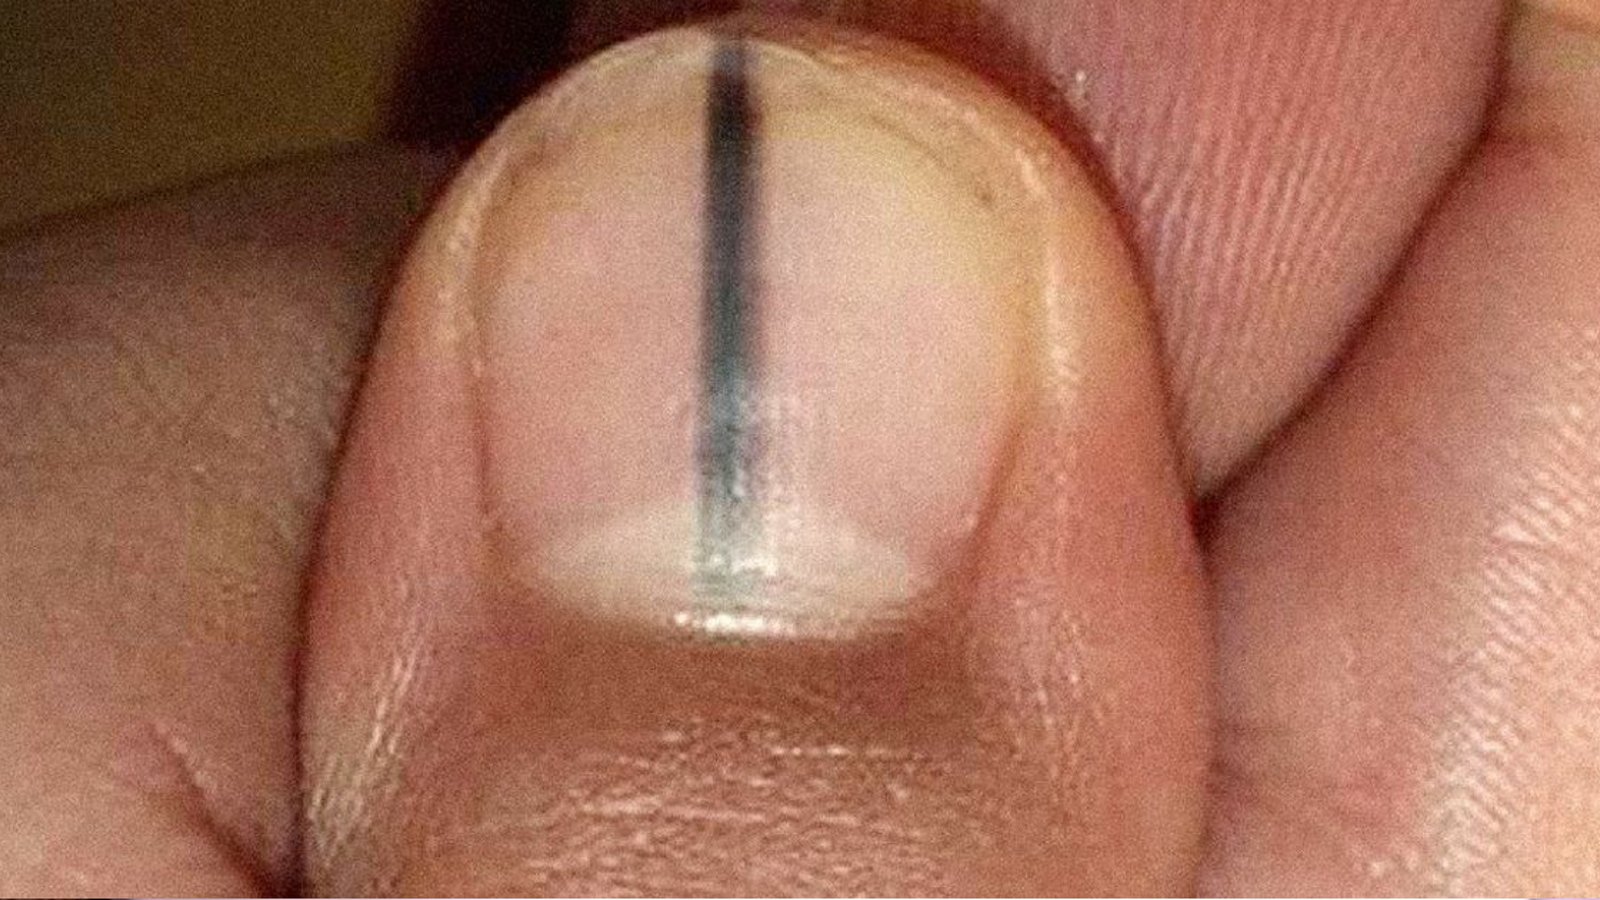 Vous voyez une ligne noire sur votre ongle? Consultez immédiatement votre médecin